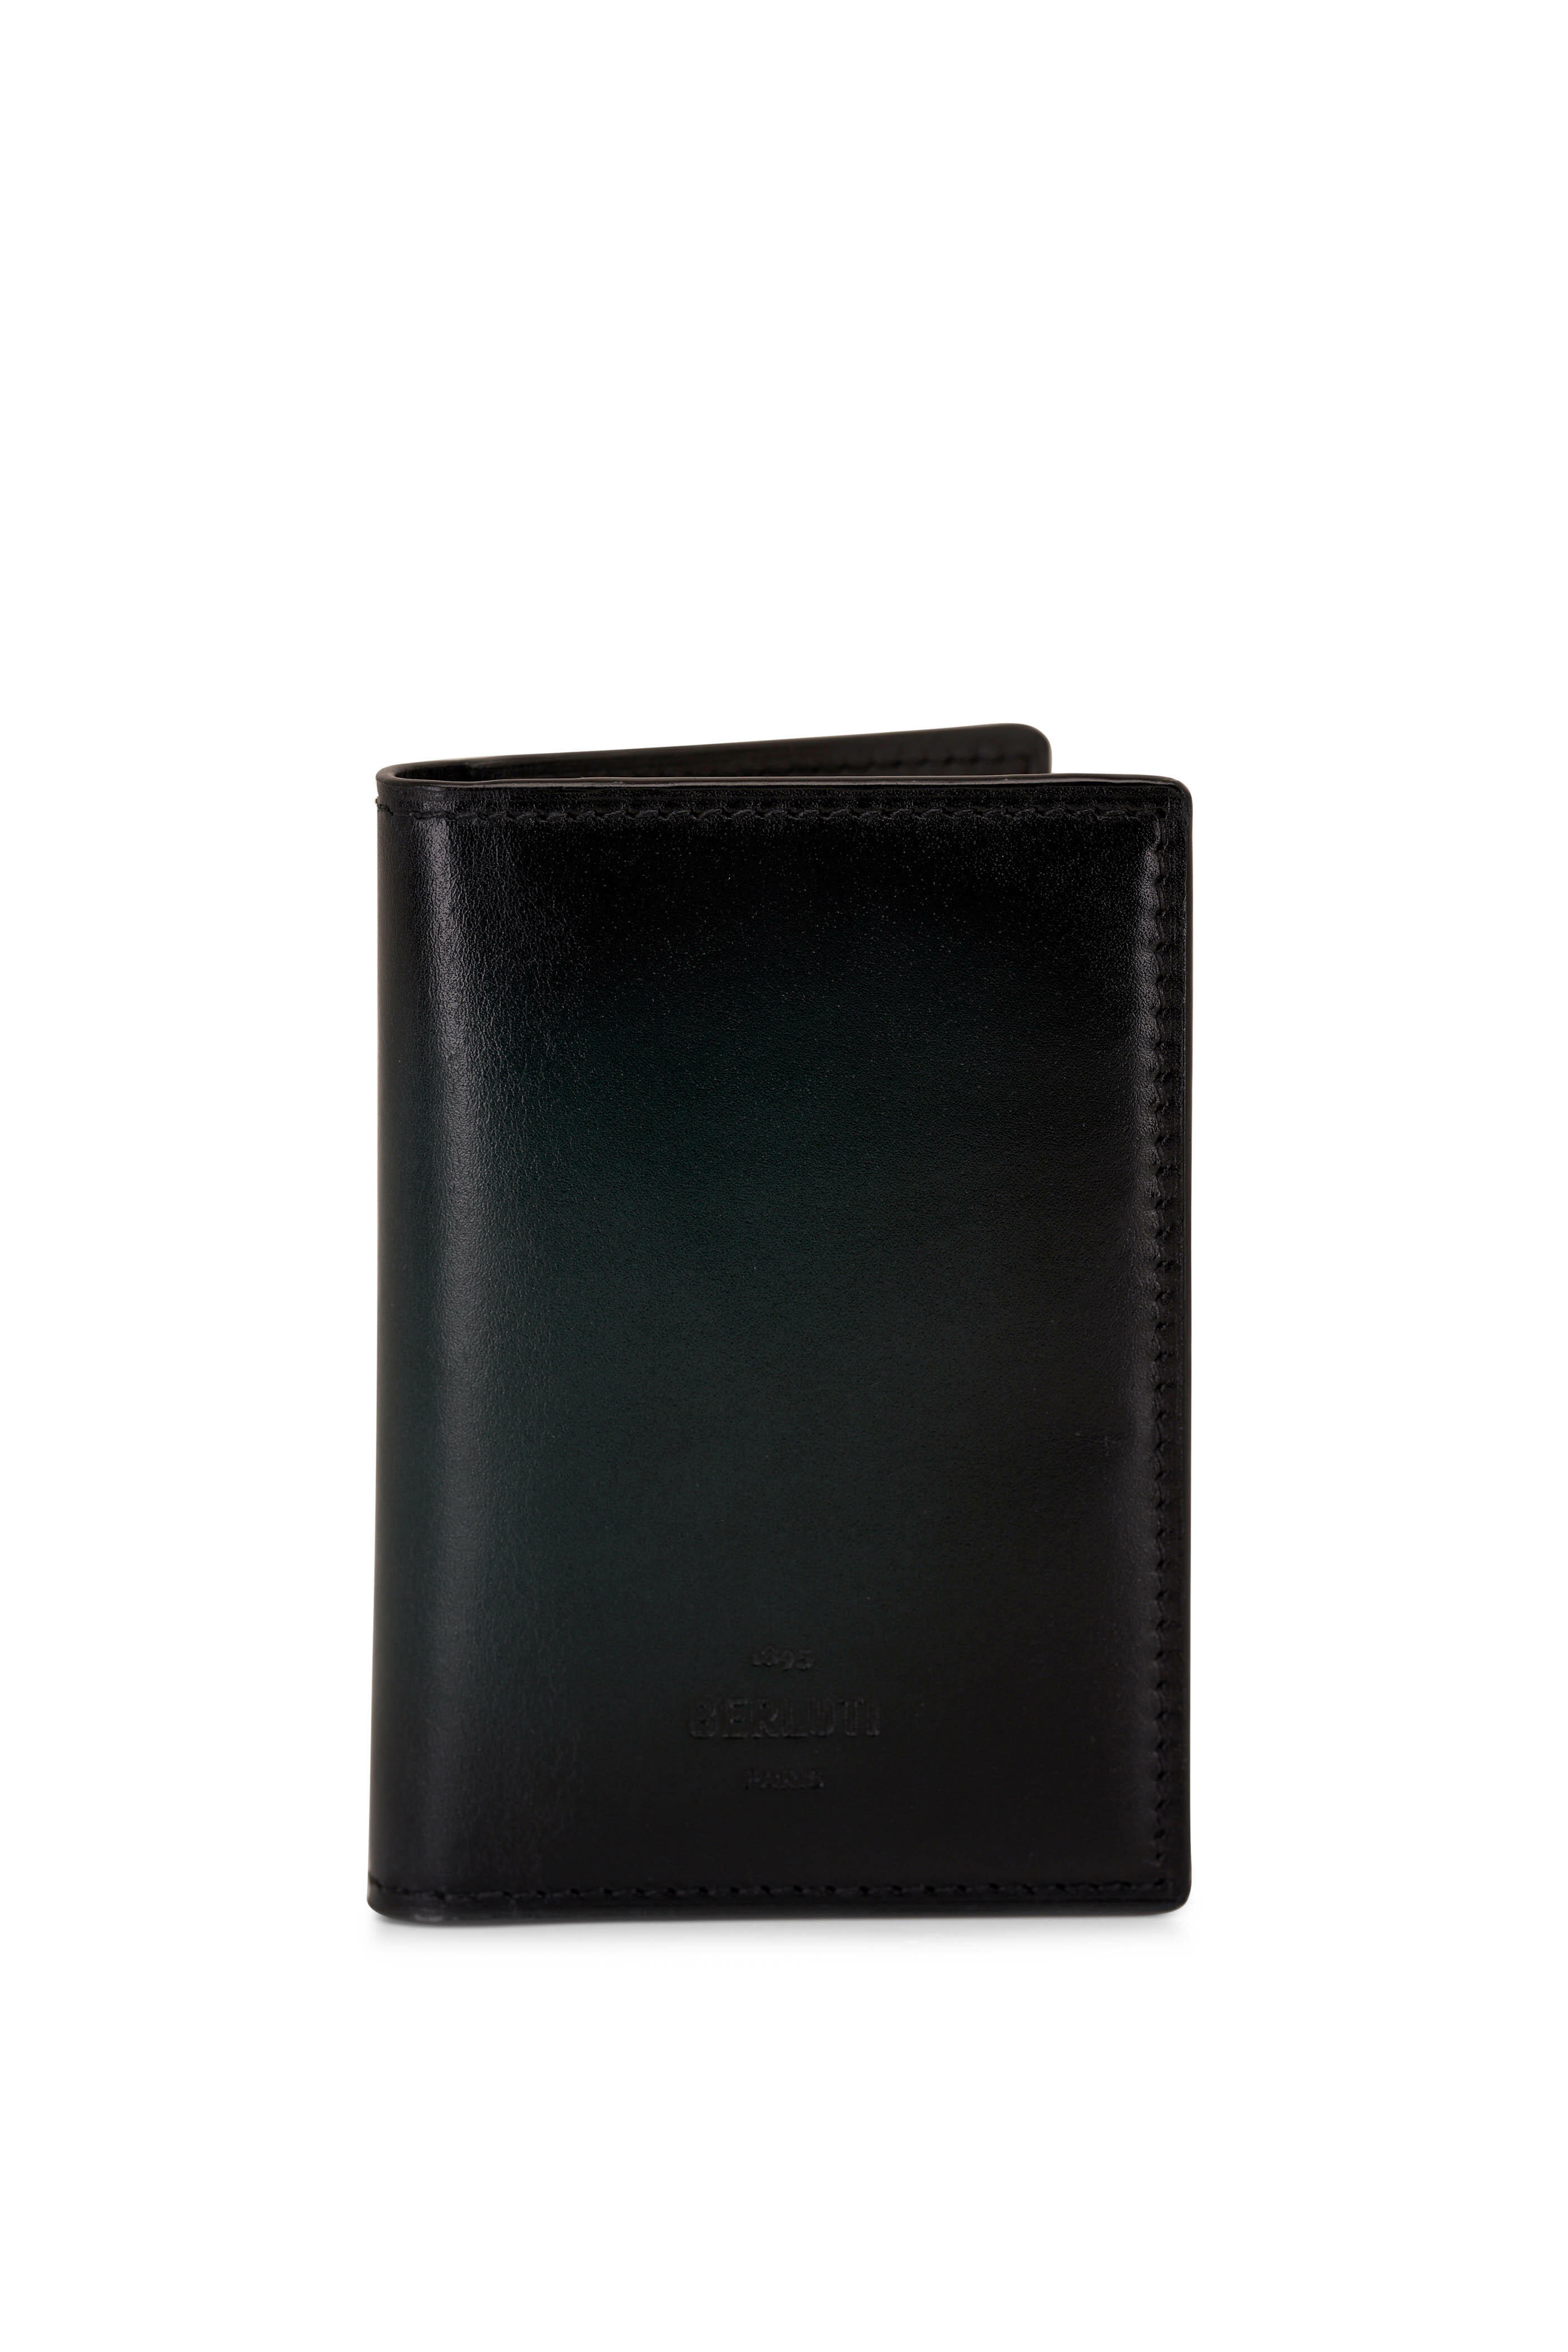 Berluti - Jagua Neo Venezia Opuntia Leather Vertical Wallet